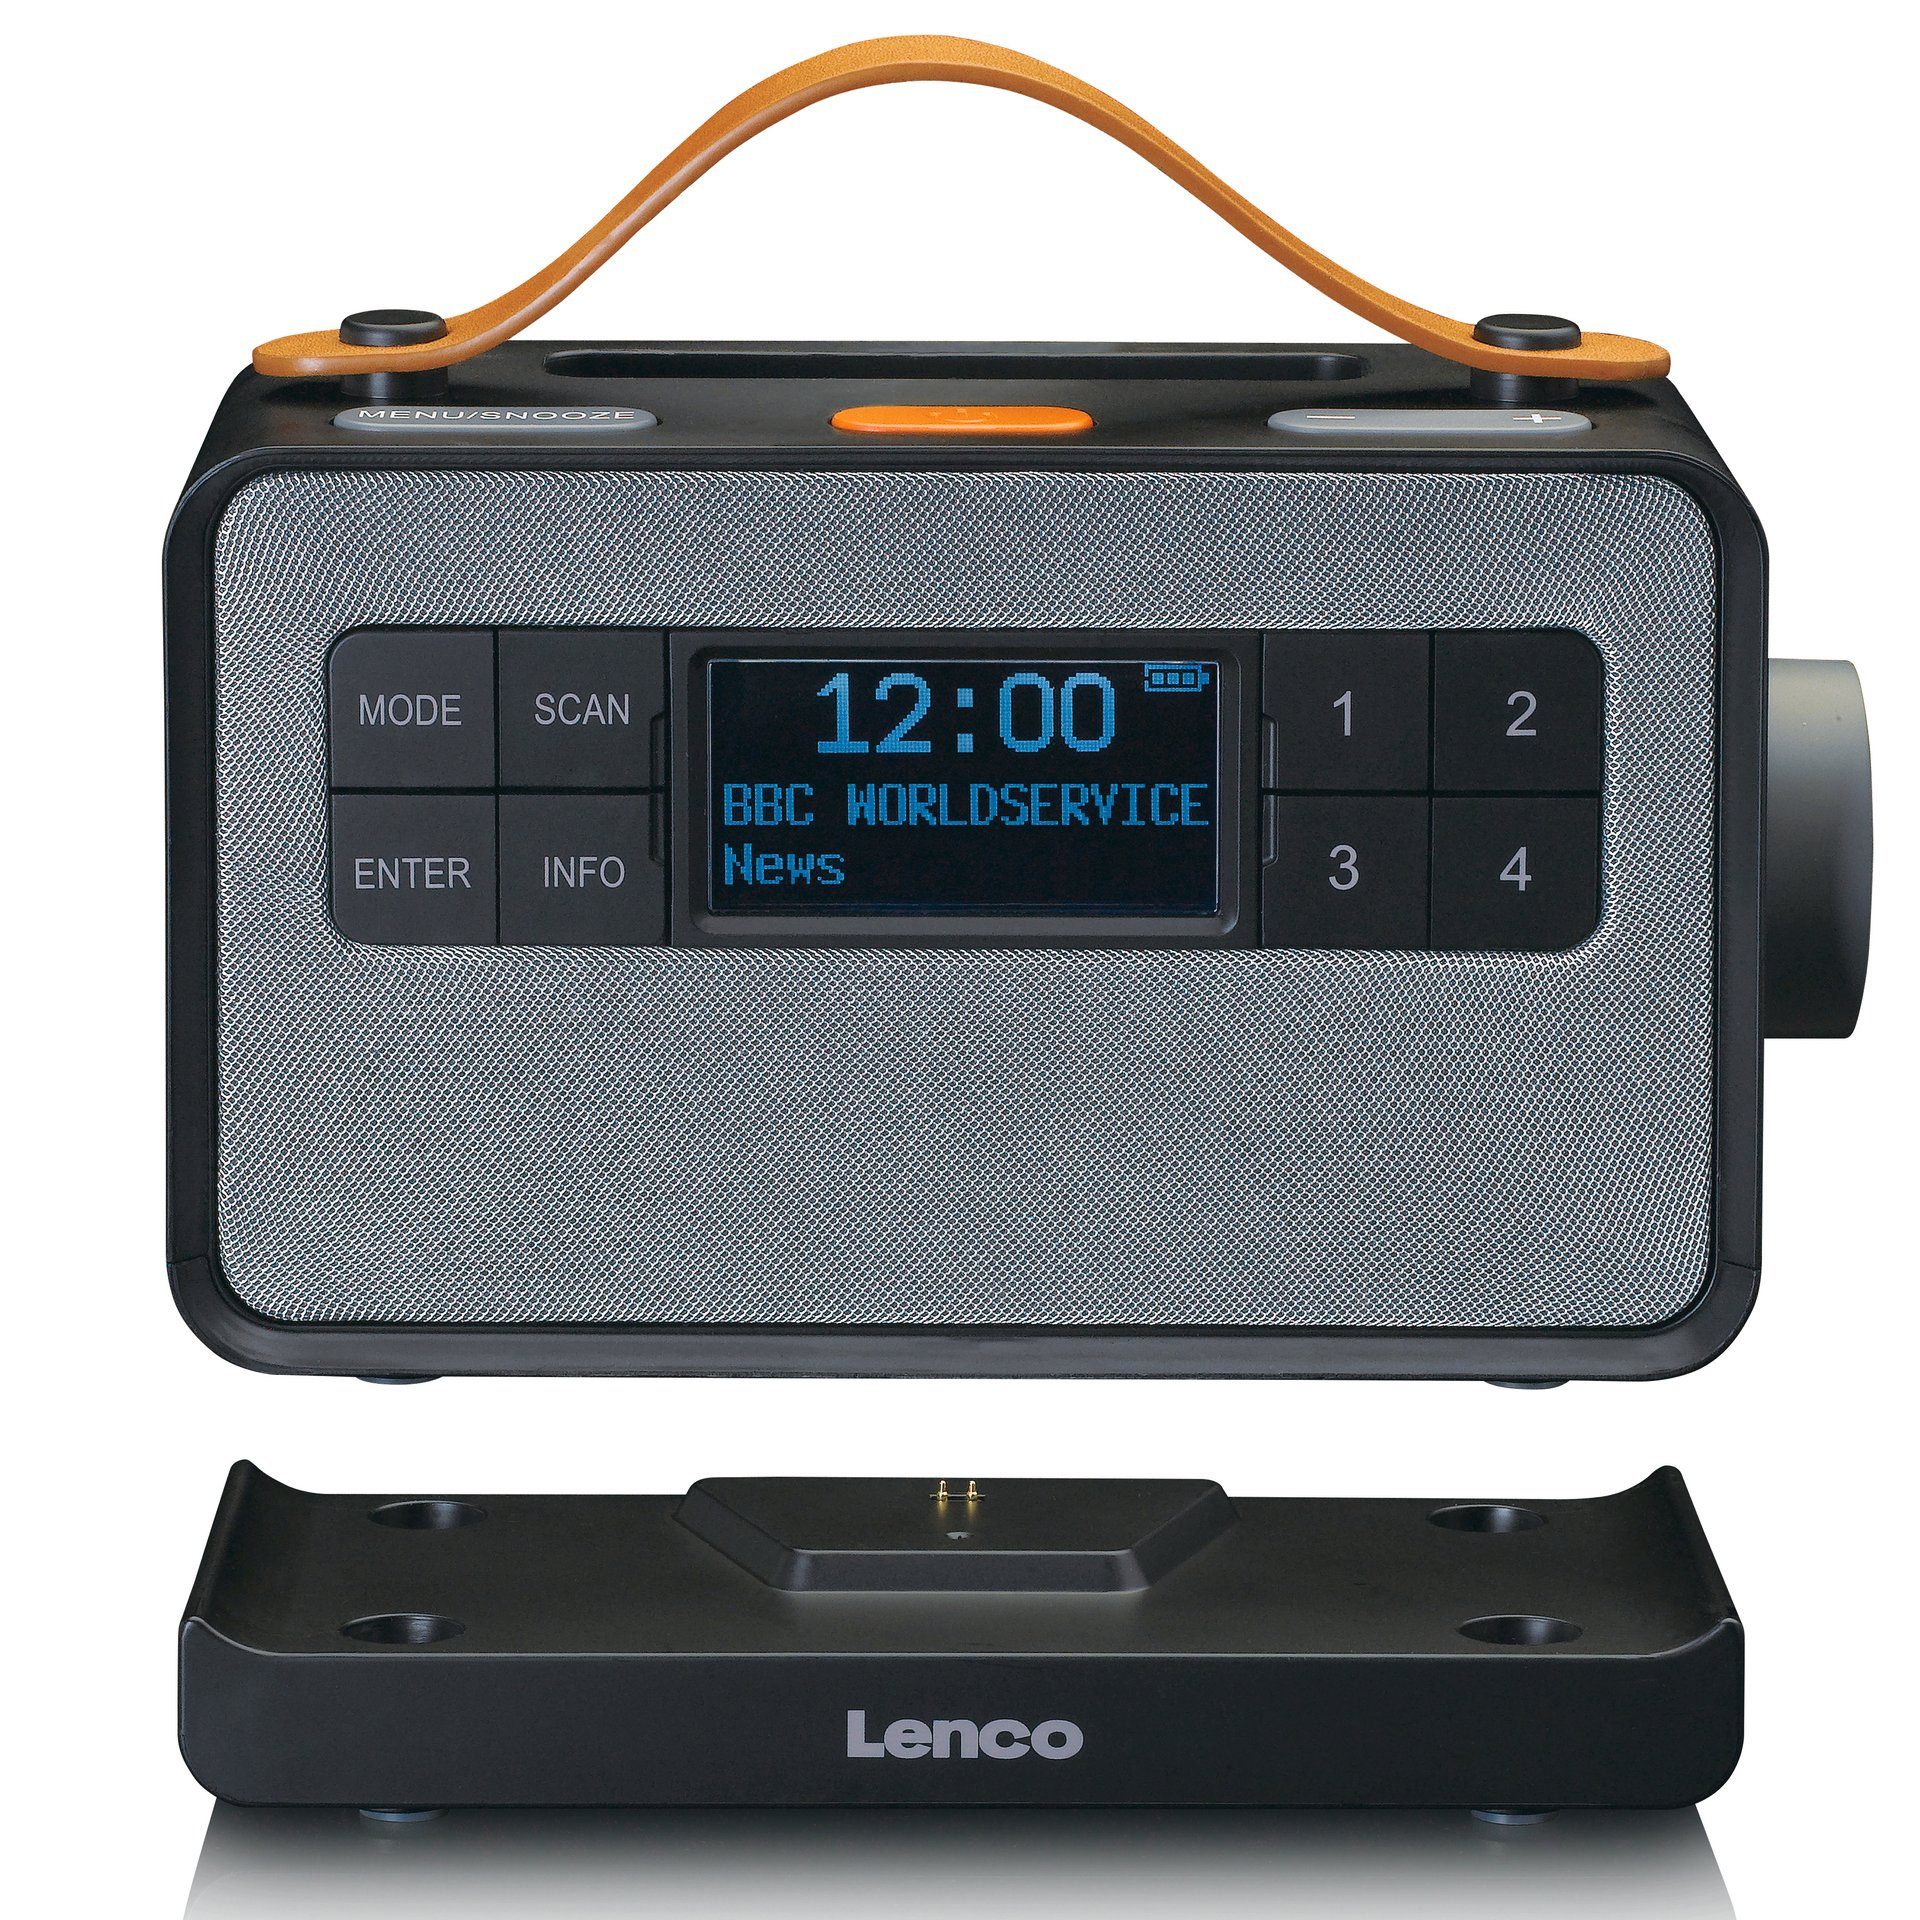 Großeinkauf Lenco PDR-065 Digitalradio (DAB) schwarz